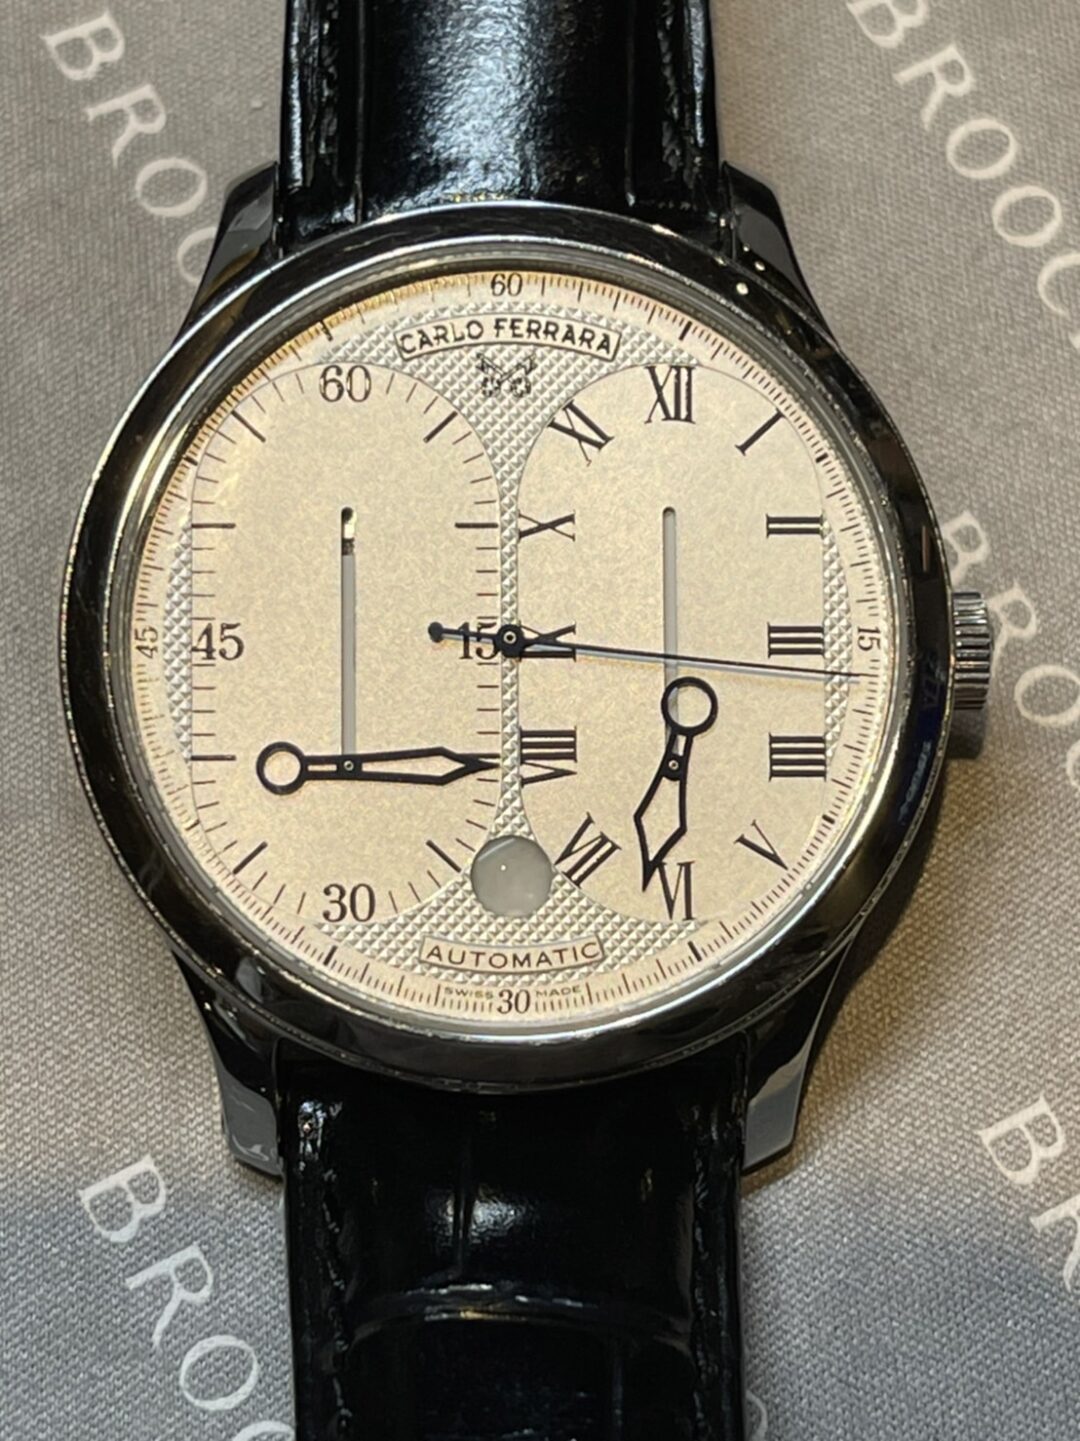 ローマ数字によってクラシカル感が出ているカルロ・フェラーラの腕時計